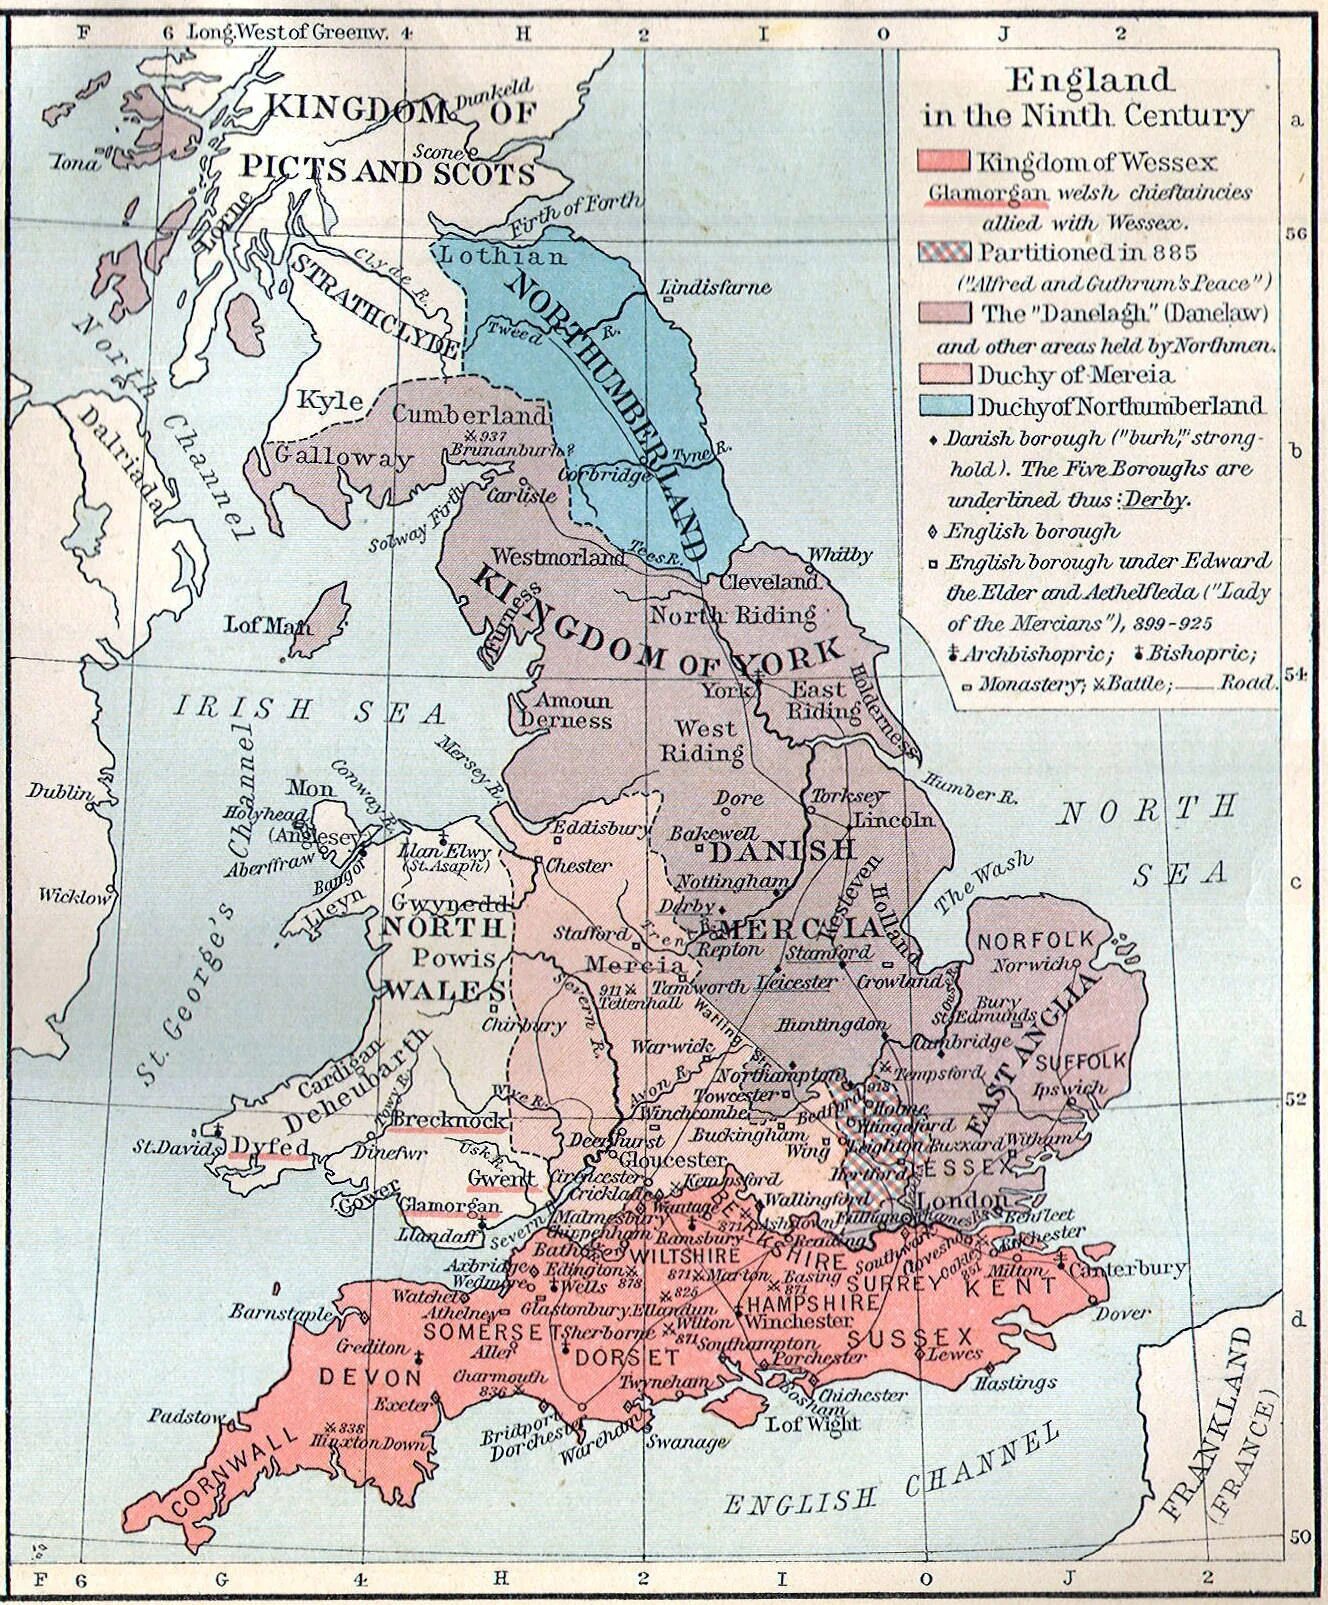 Уэссекс Нортумбрия. Королевство Уэссекс 9 век. Карта средневековой Англии 9 век. Карта Великобритании в 9 веке. Англия 9 век